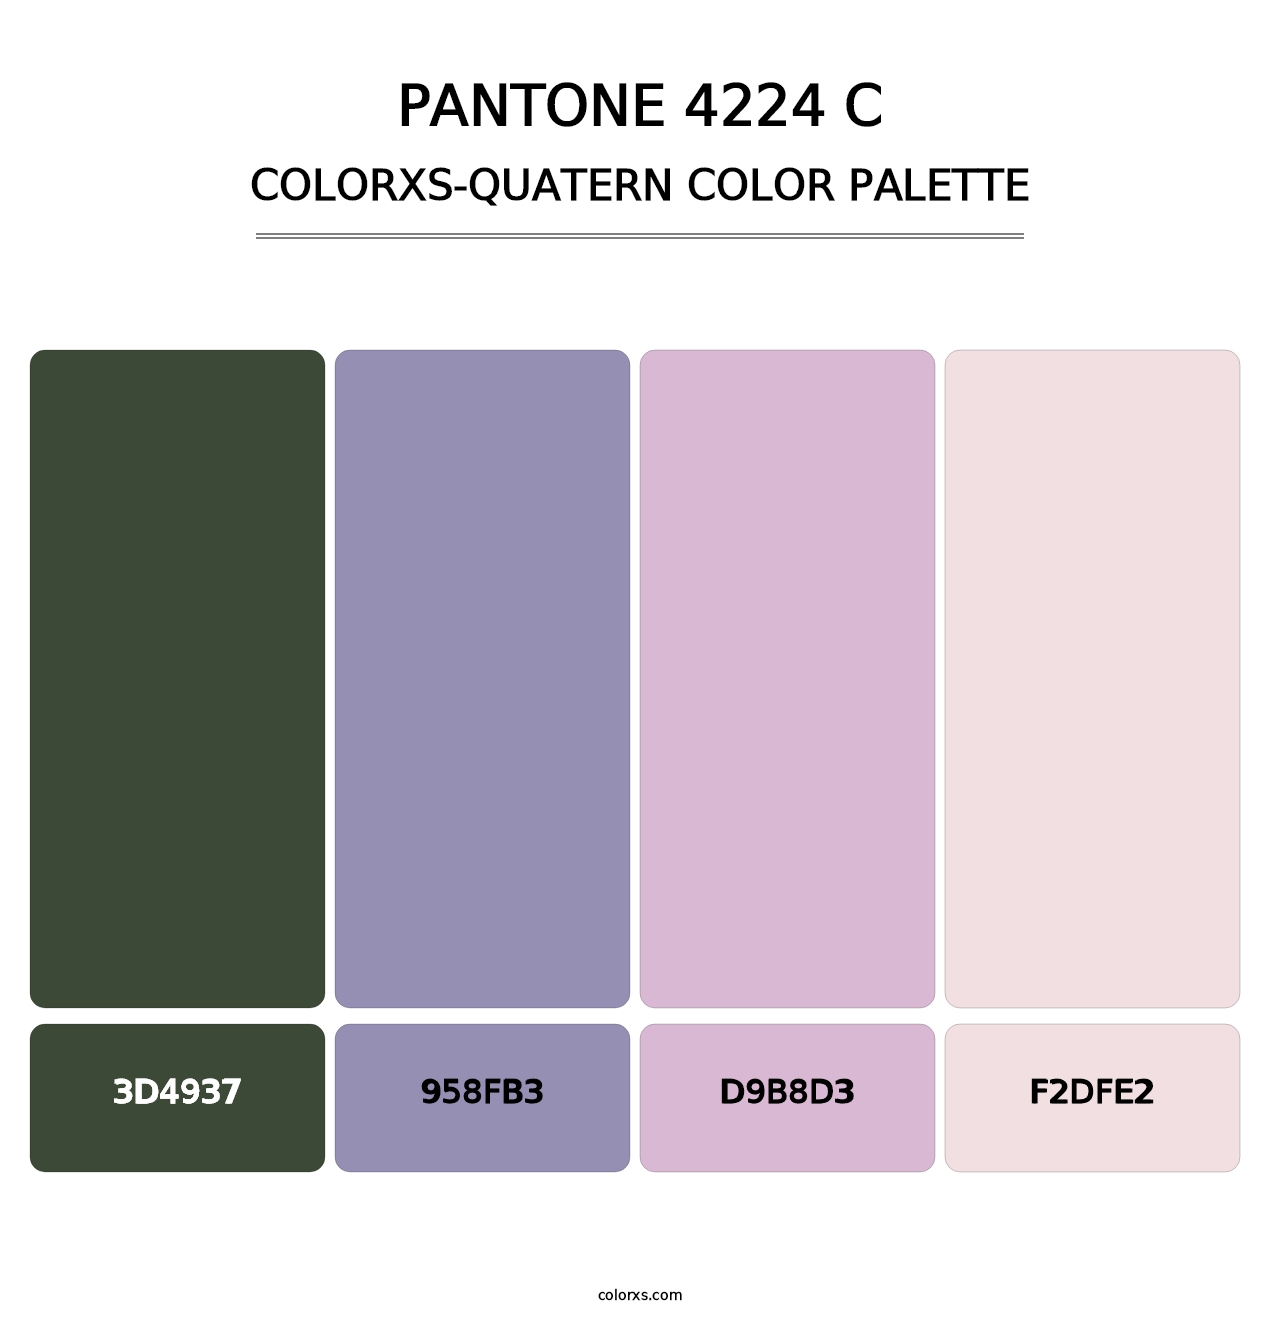 PANTONE 4224 C - Colorxs Quatern Palette